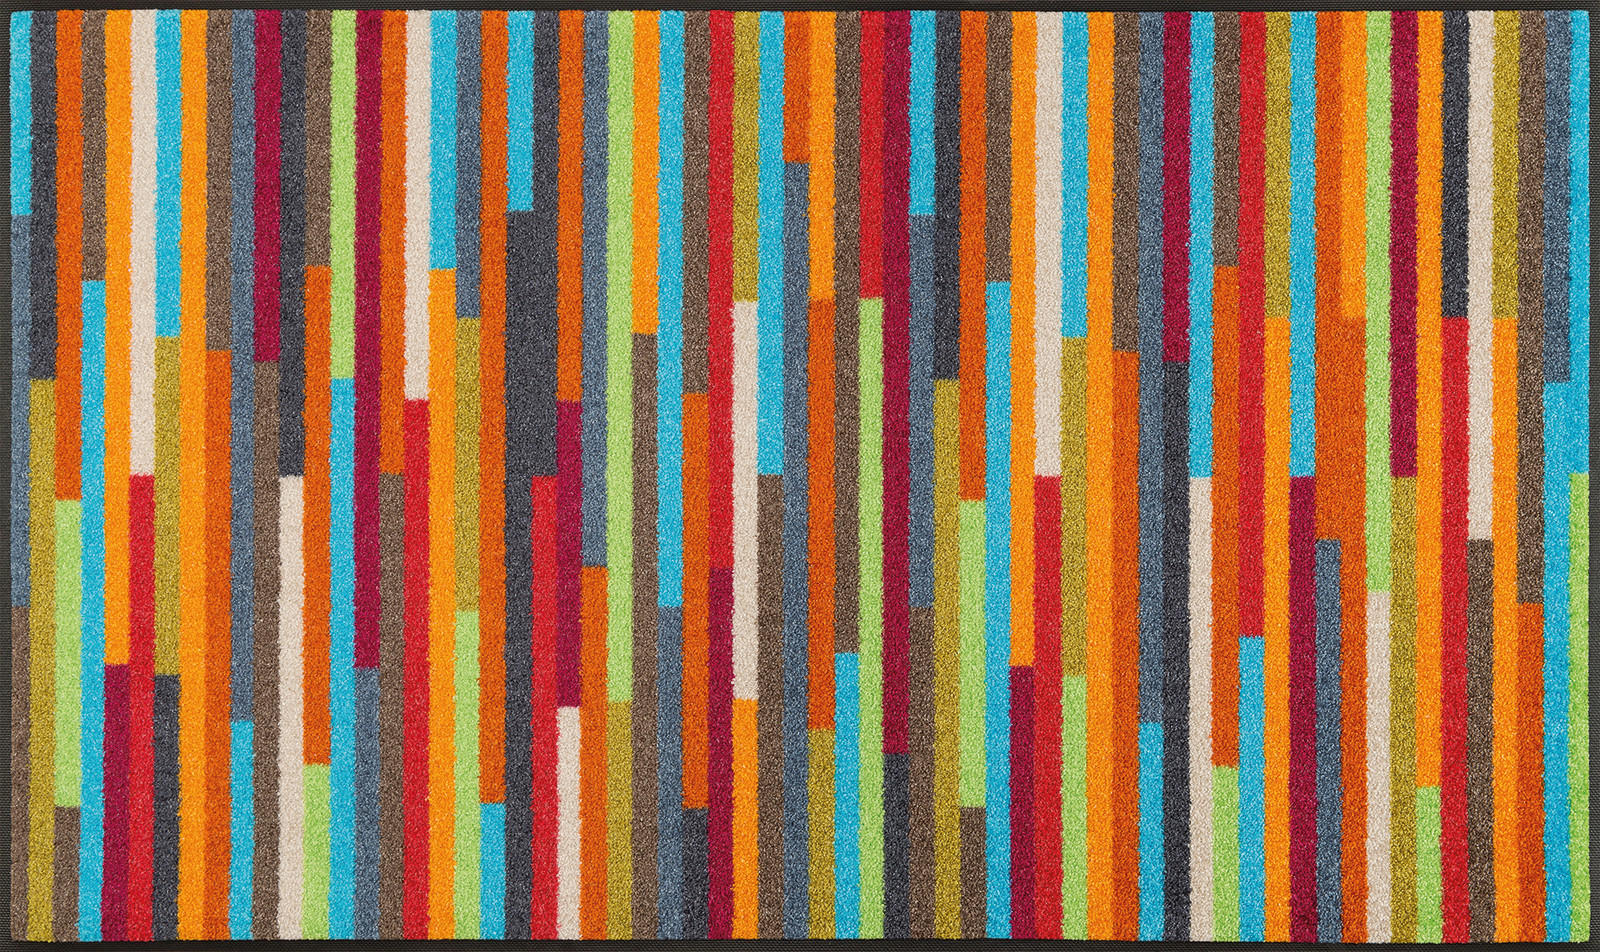 FUßMATTE 75/120 cm Graphik Multicolor  - Multicolor, Basics, Kunststoff/Textil (75/120cm) - Esposa